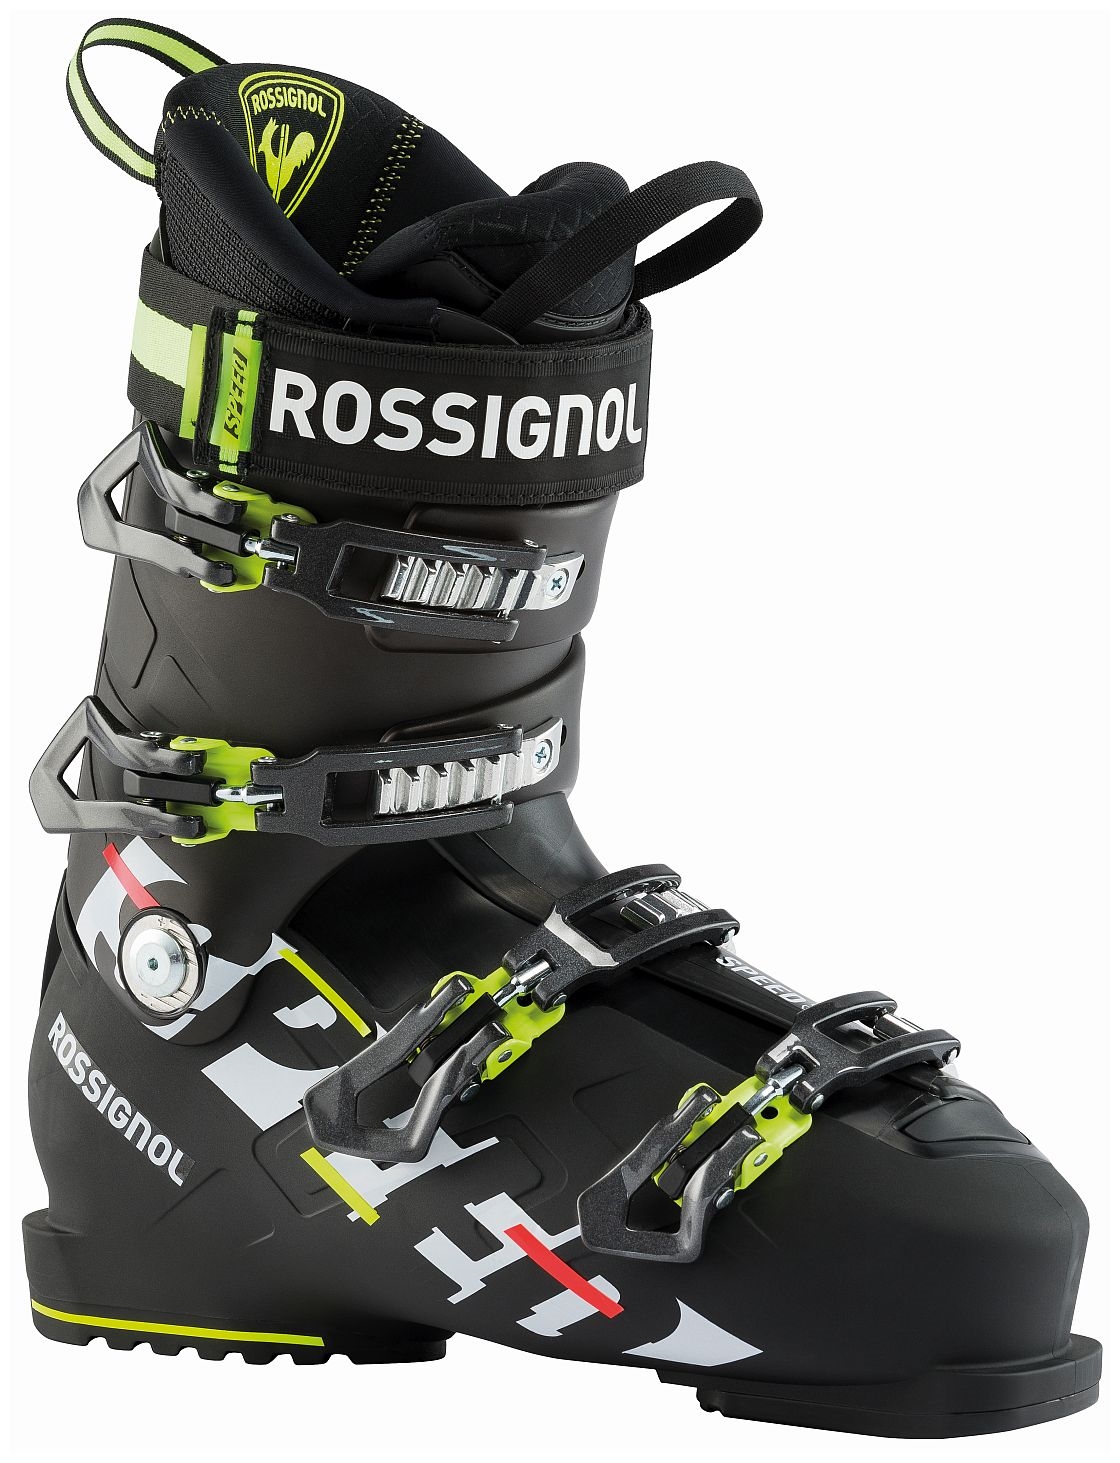 Rossignol buty narciarskie męskie Speed 100